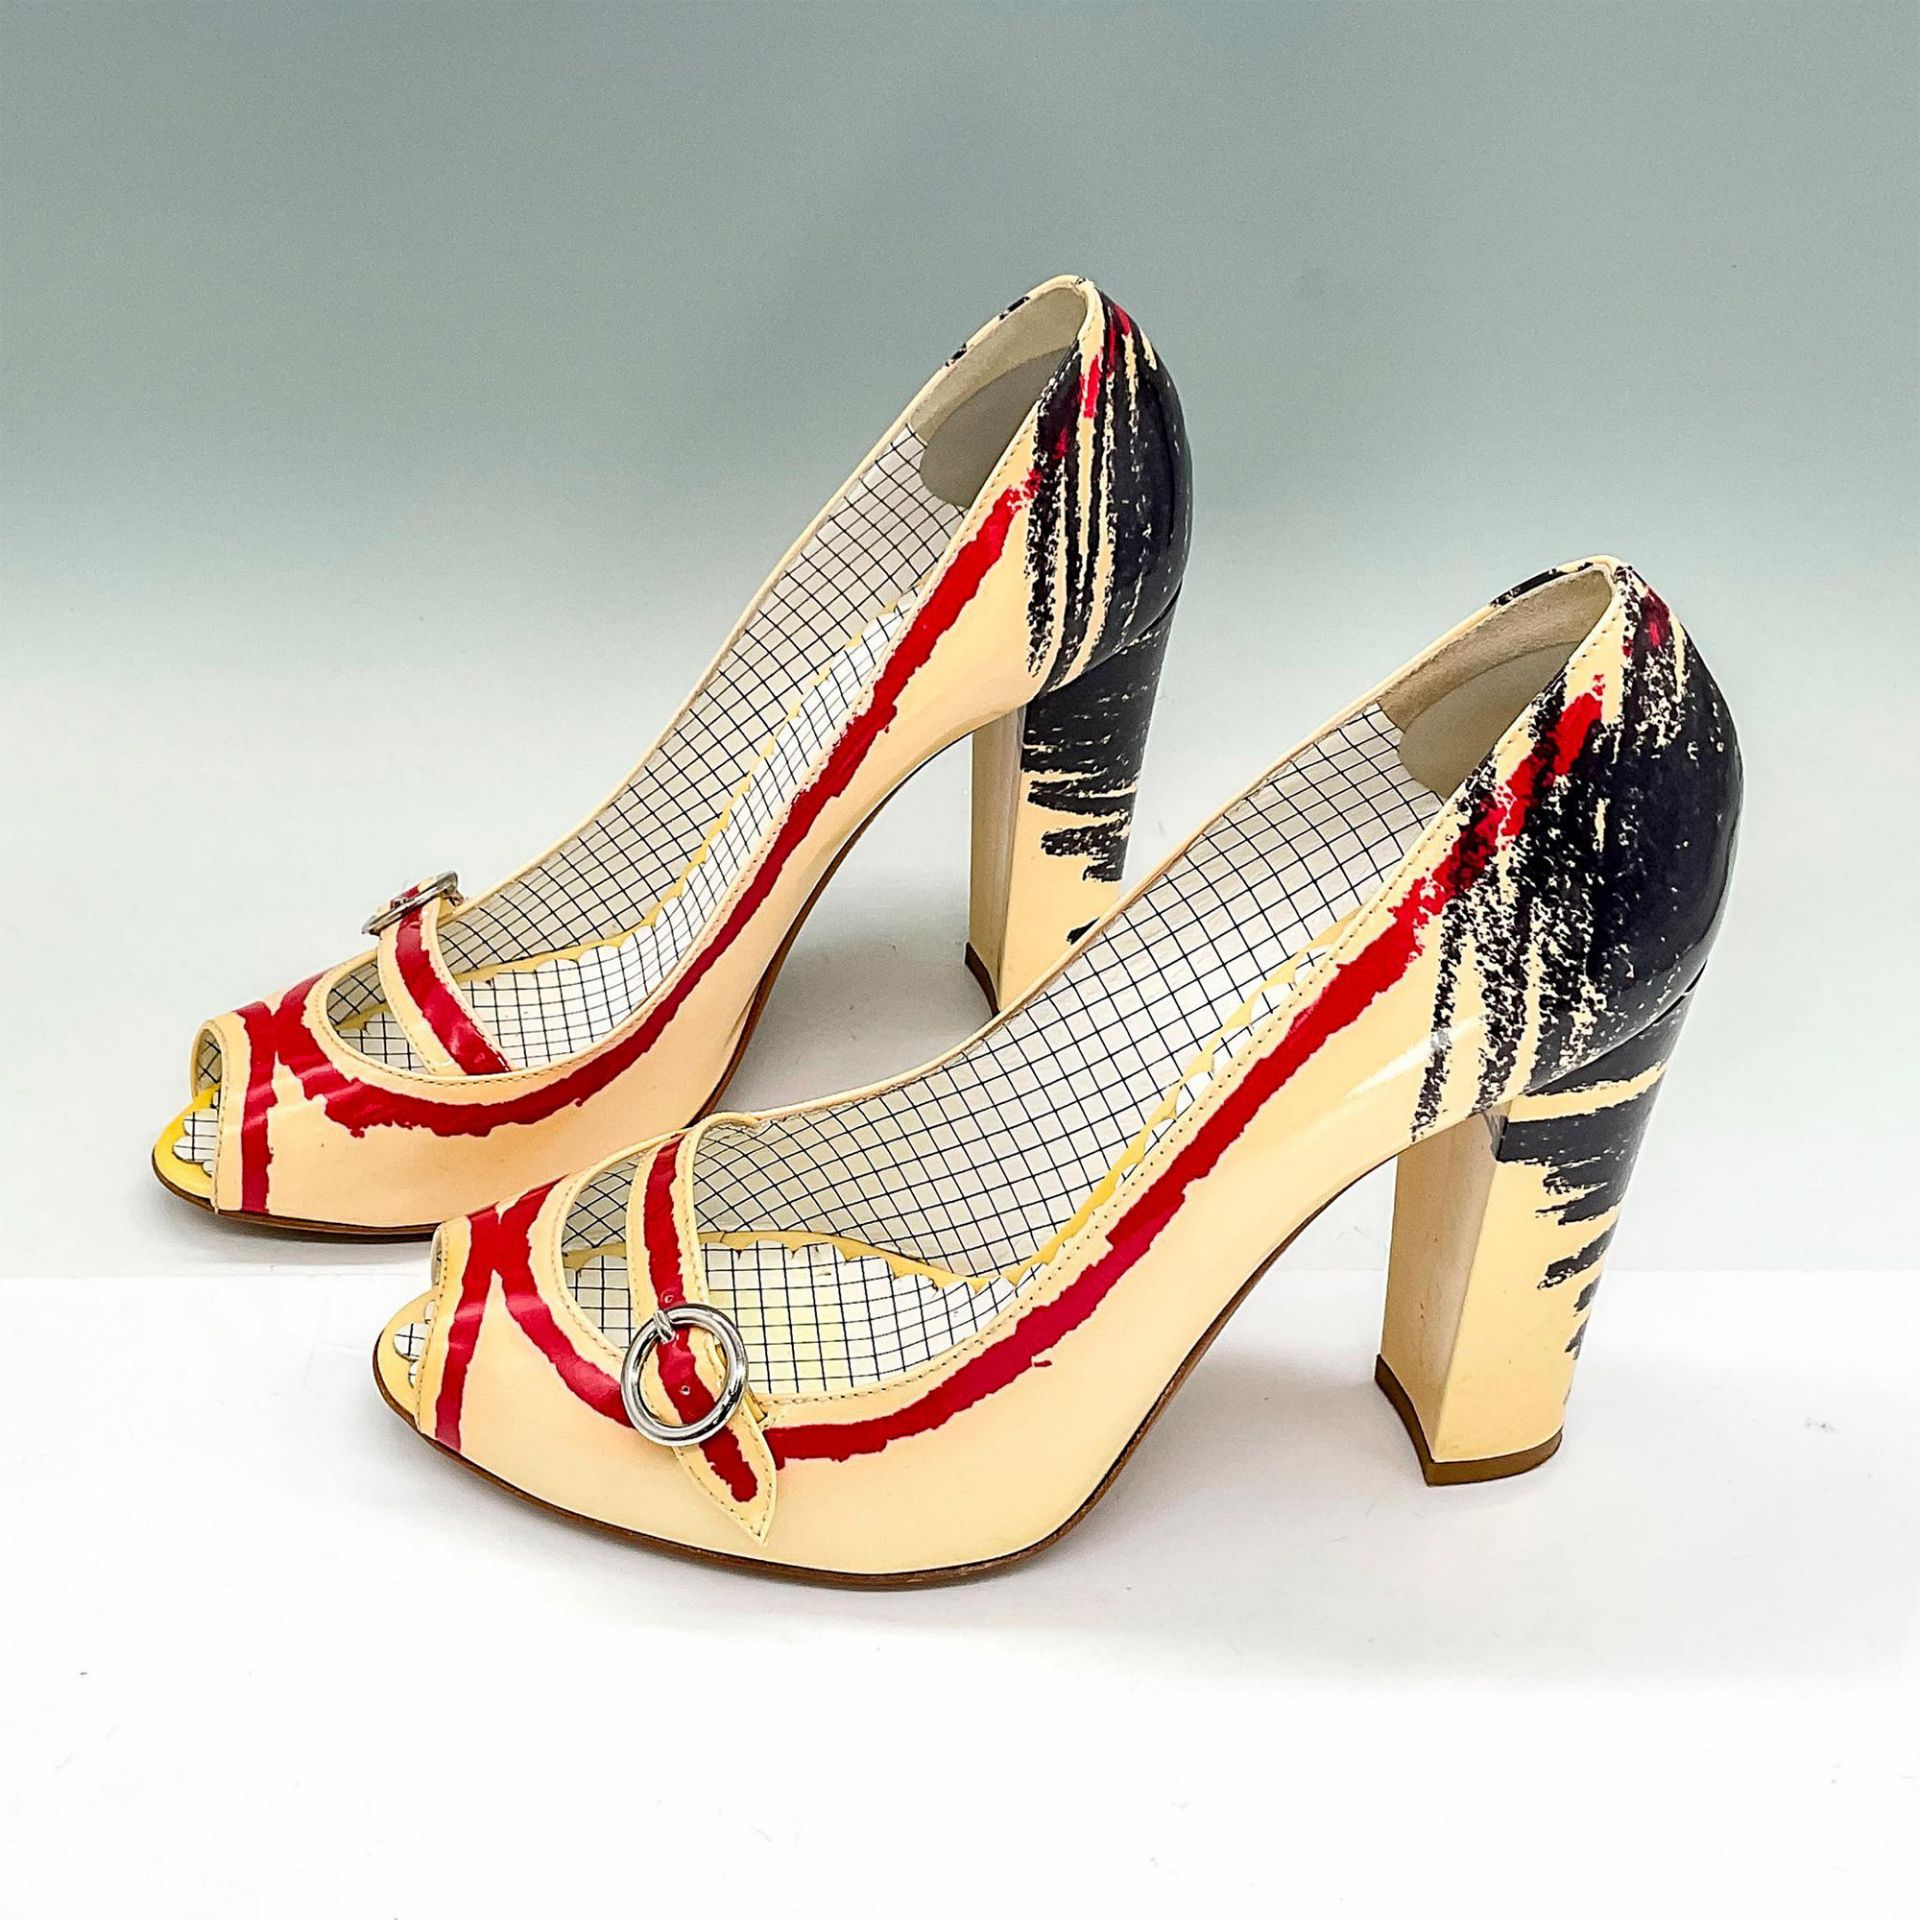 Moschino Open Toe Heels, Cream + Scribble Crayon Red/Navy - Image 3 of 6